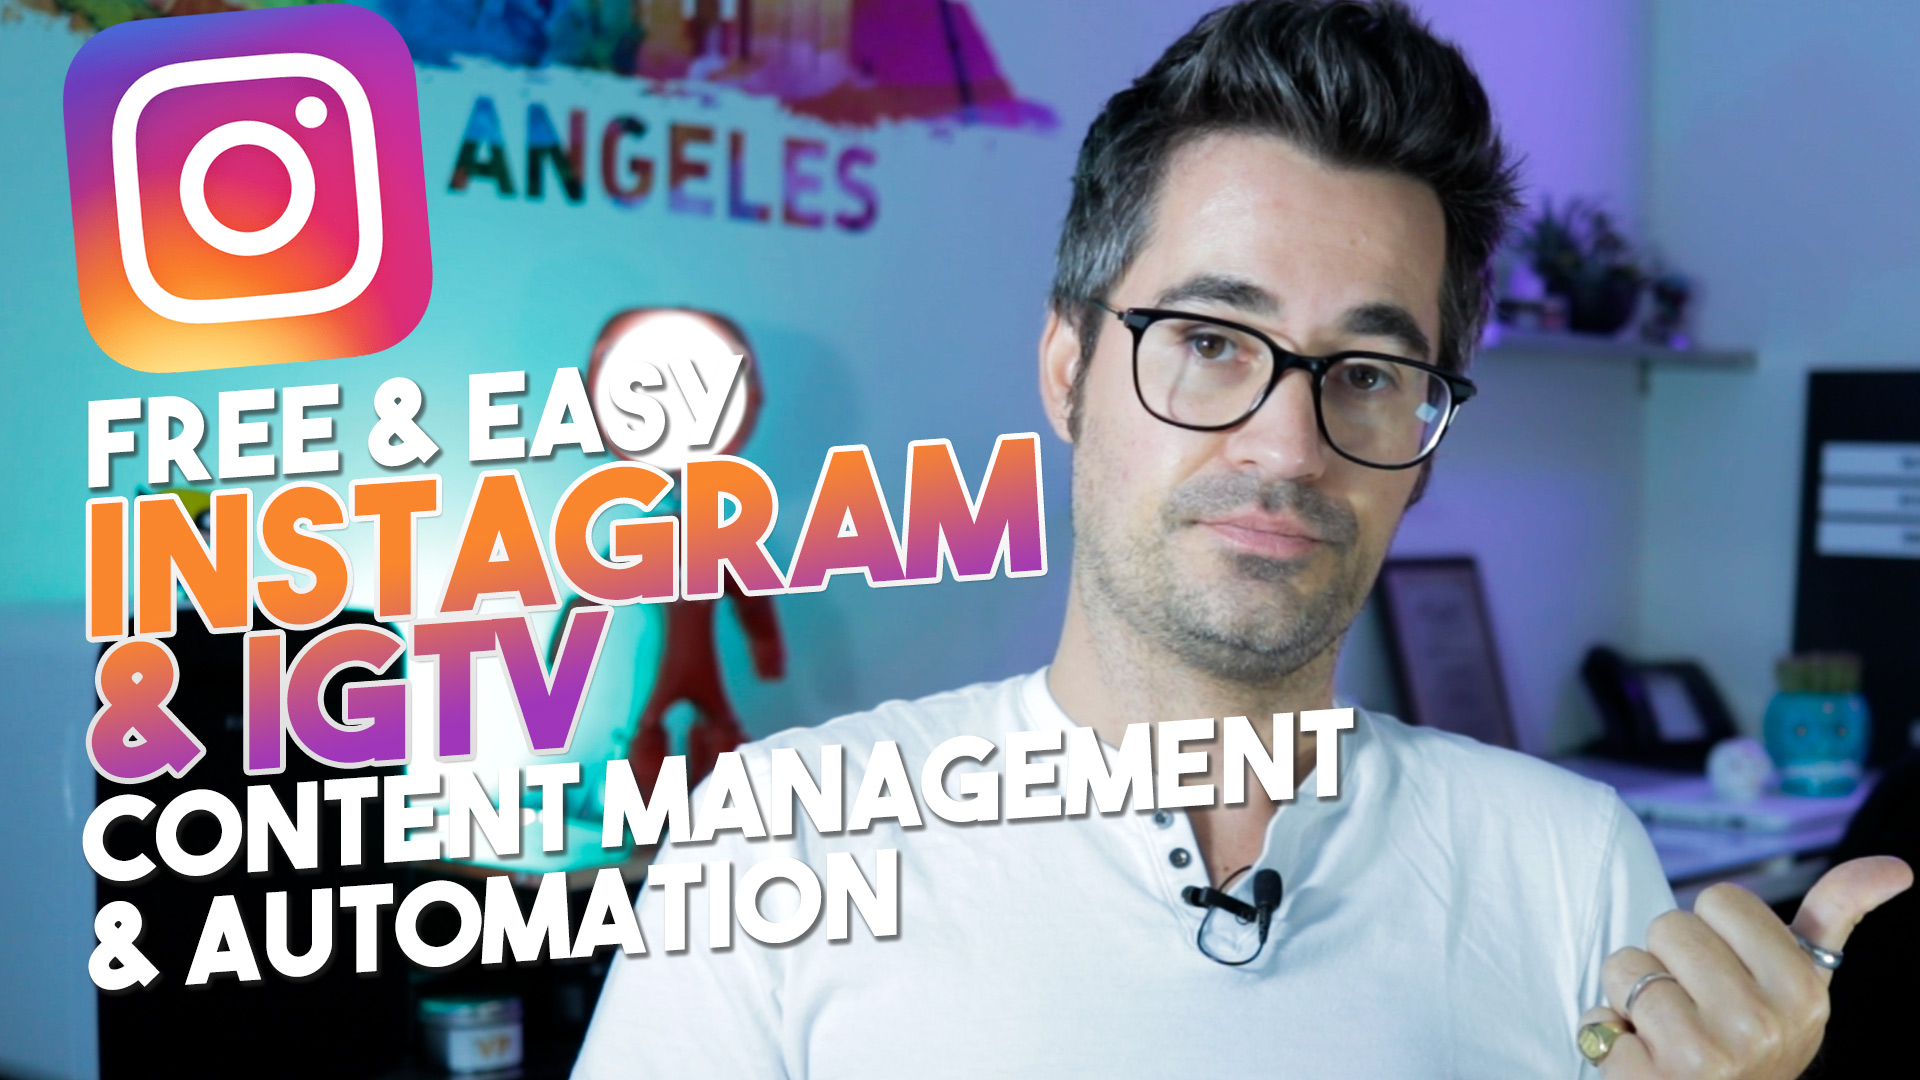 Gérer Instagram & IGTV facilement + gratuitement sur son ordinateur – Facebook Creator Studio video guide